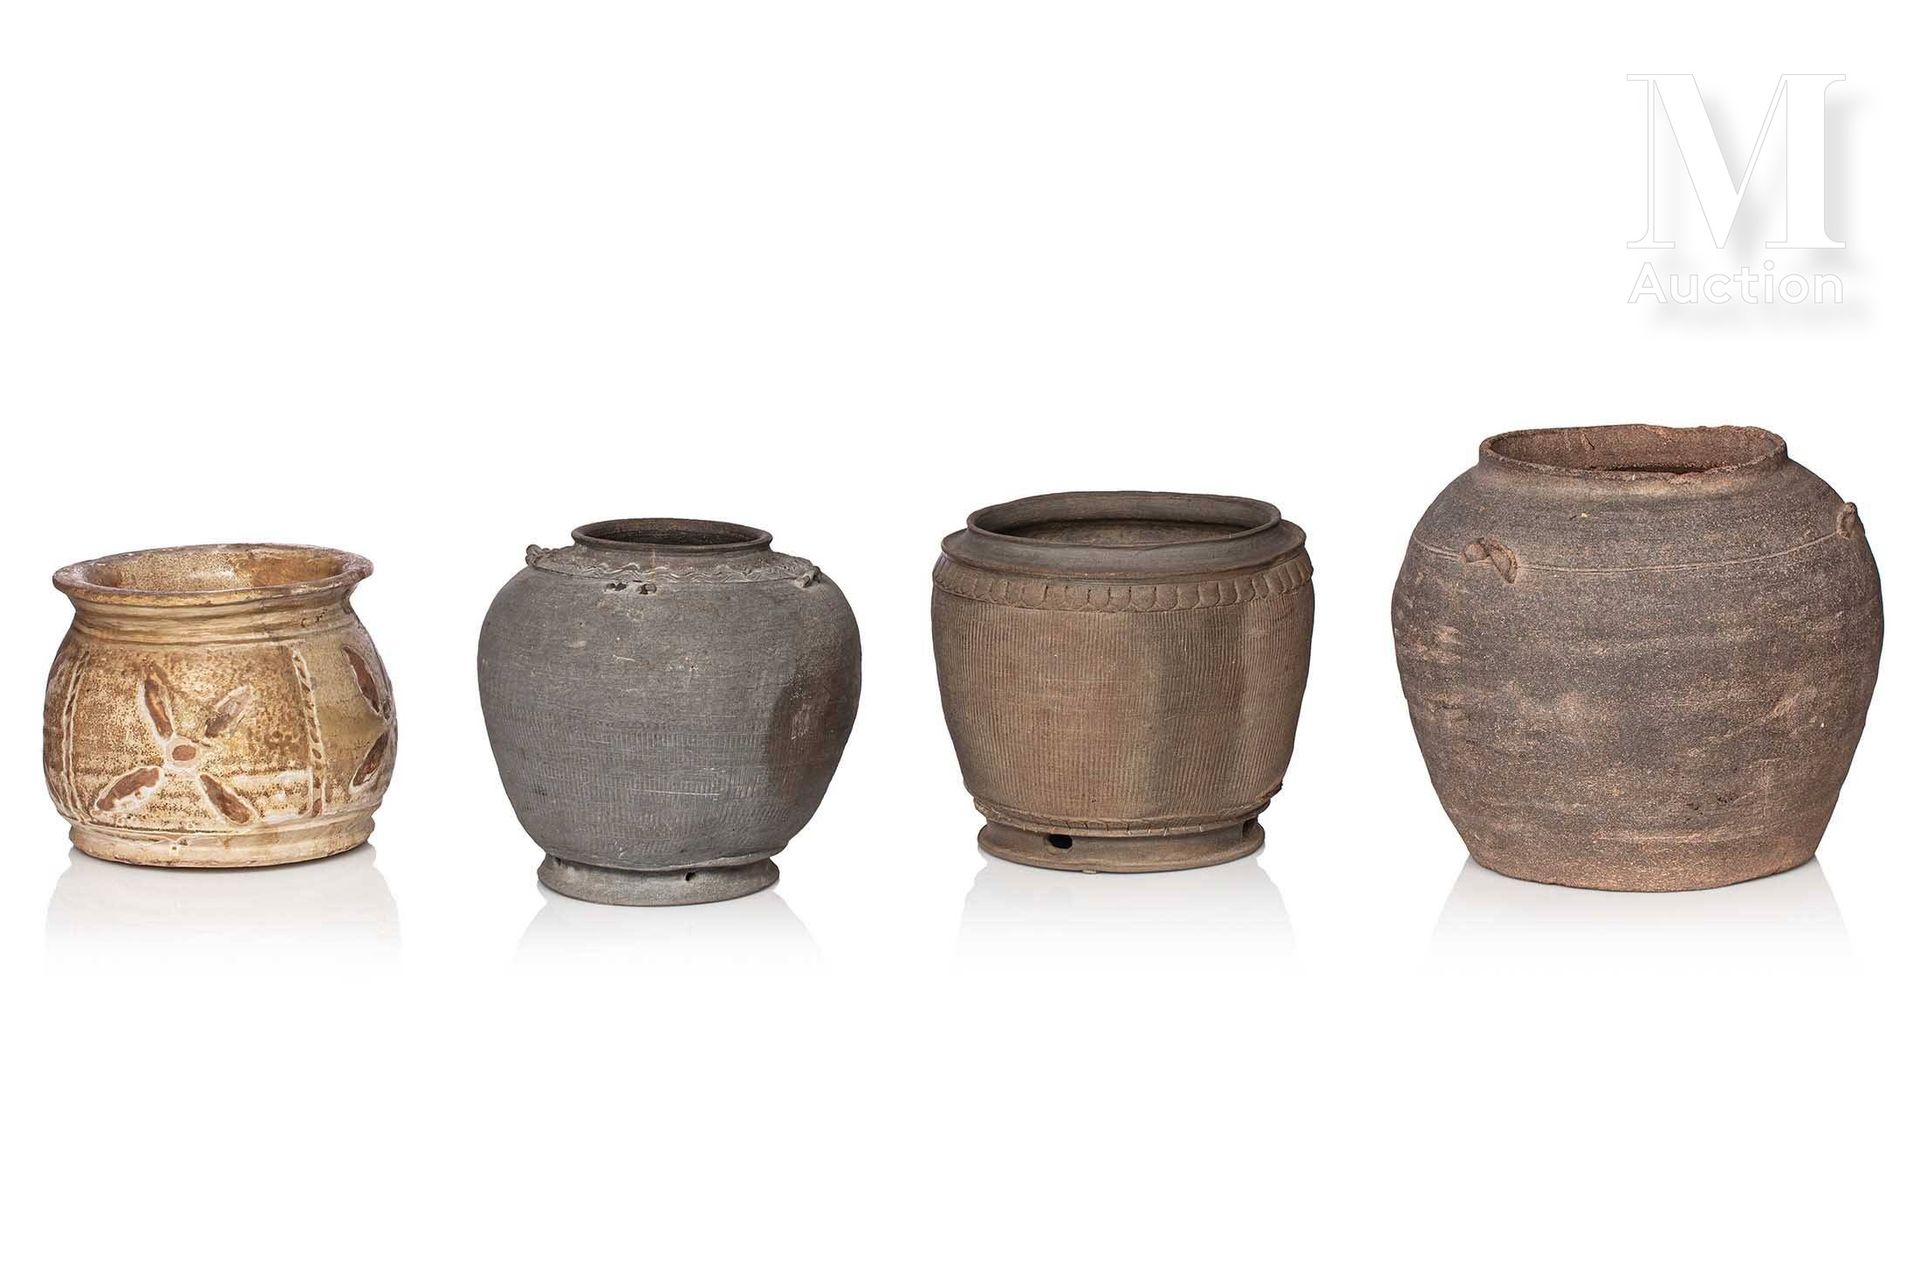 VIETNAM, XIV/XVe siècle, Ensemble de quatre jarres en terre cuite 高度：14至22厘米之间

&hellip;